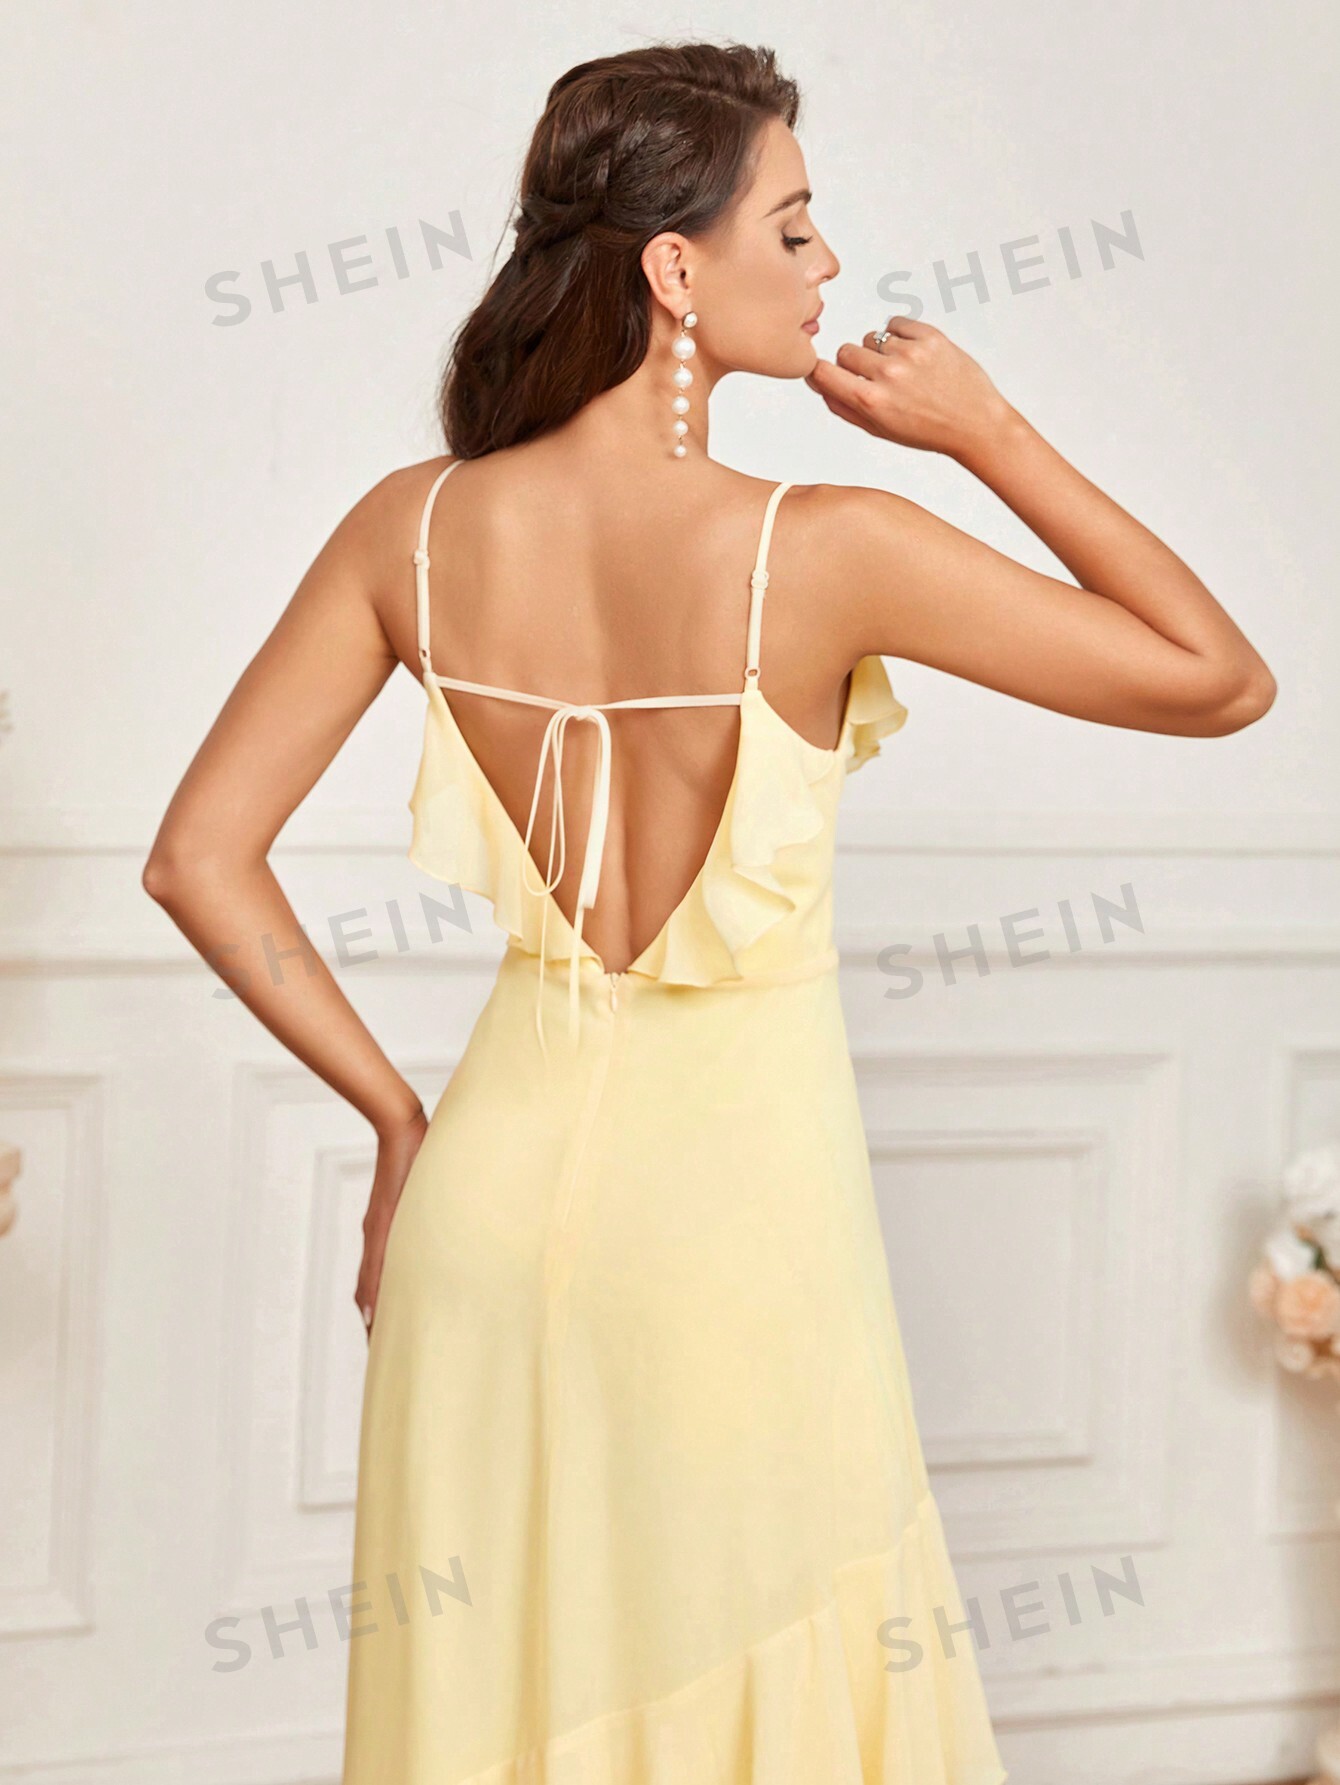 SHEIN Belle Элегантное романтическое желтое сексуальное платье-комбинация с открытой спиной и рюшами по подолу, желтый